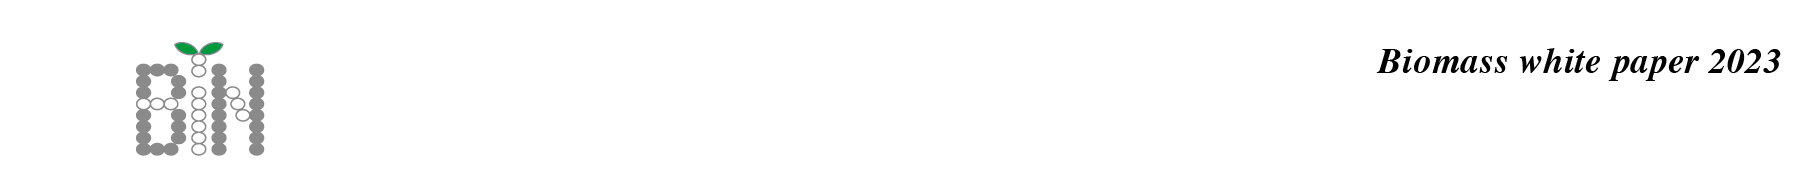 バイオマス産業社会ネットワークロゴ